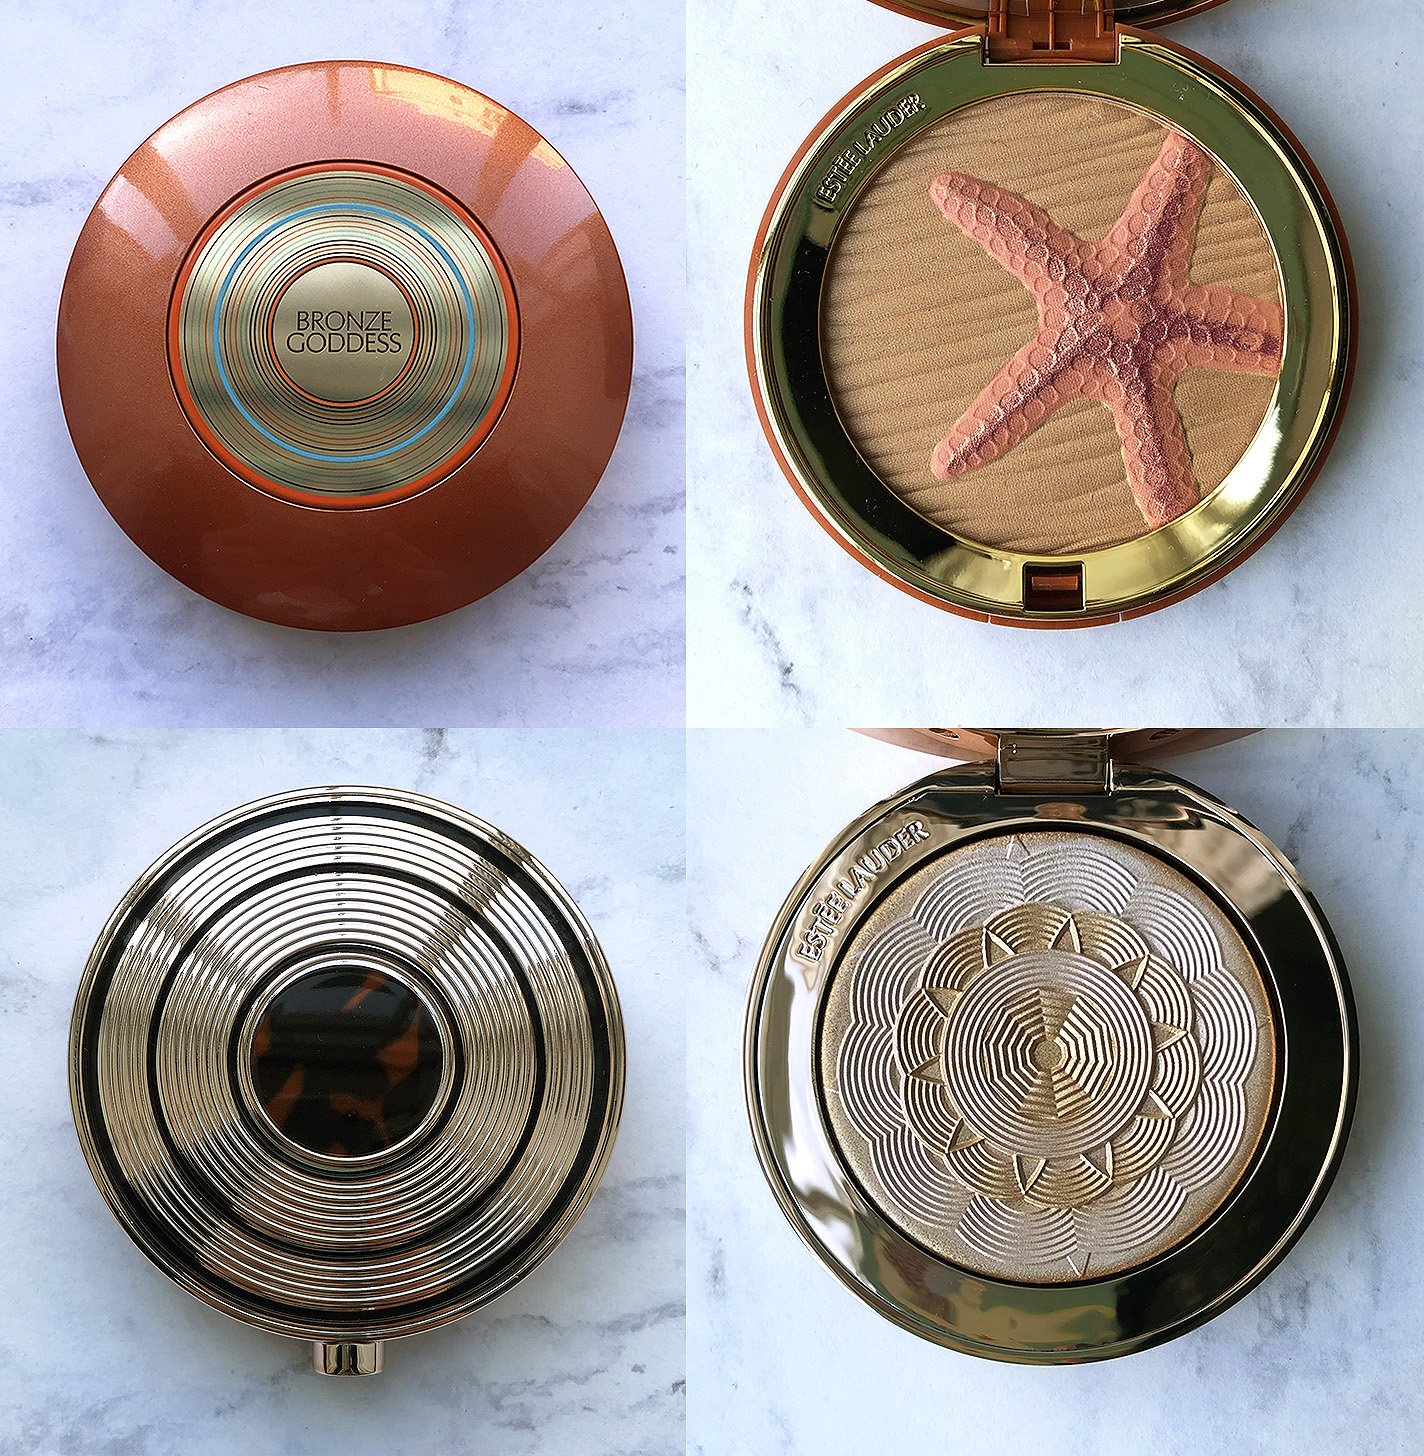   Bronzer Compacts Estée Lauder, 2011 and 2019    